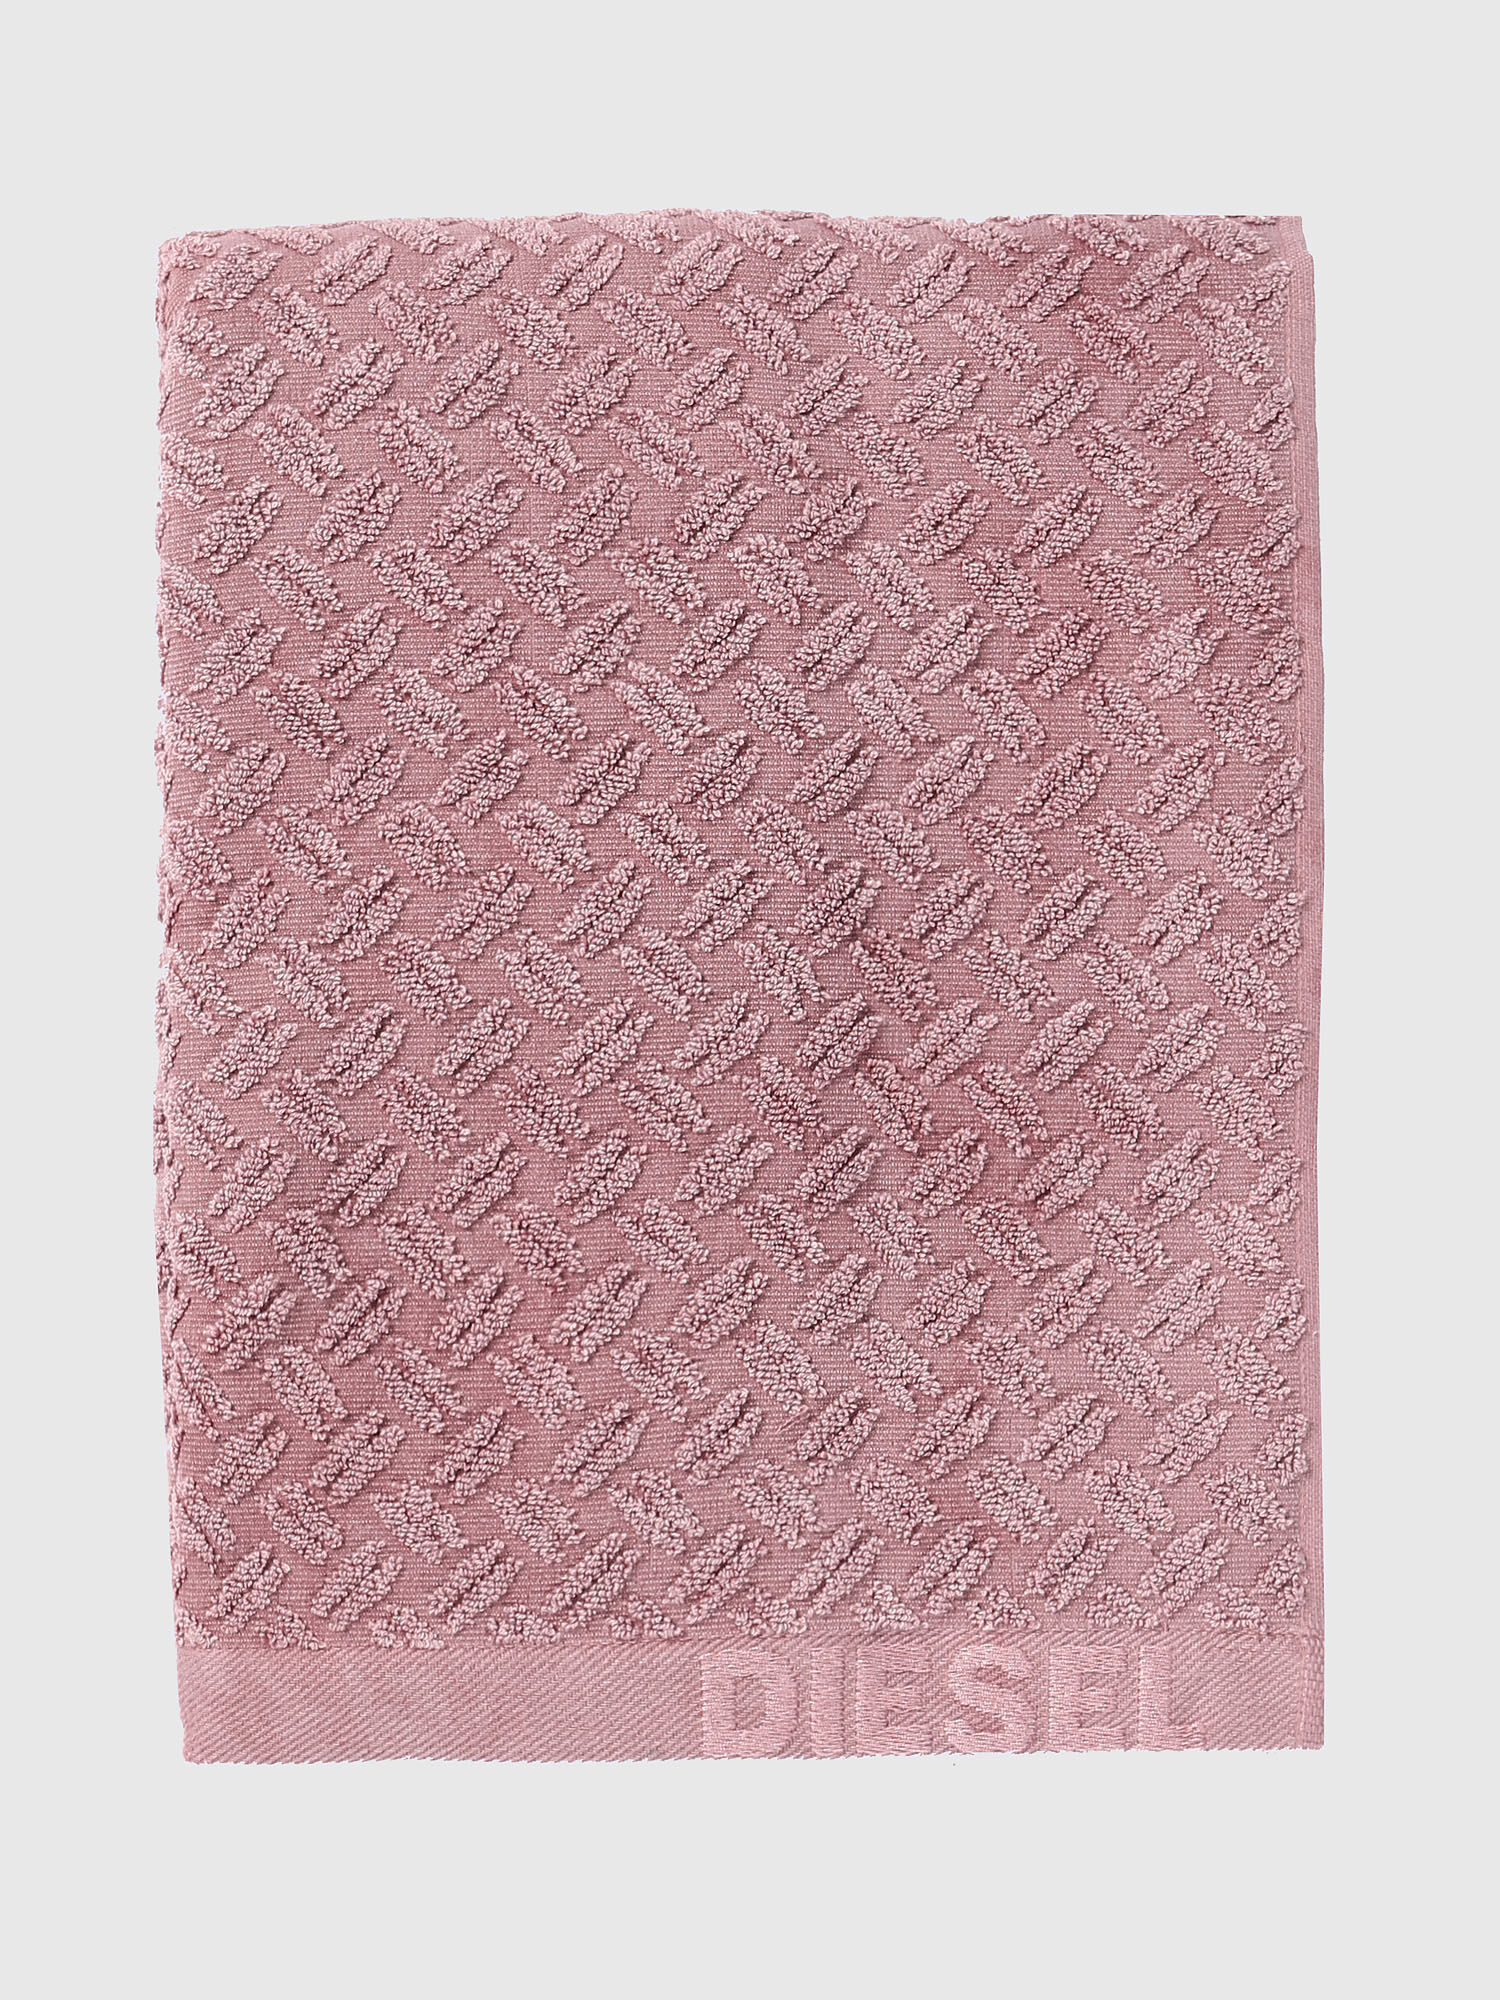 Diesel - 72301 STAGE, Rosa - Image 1